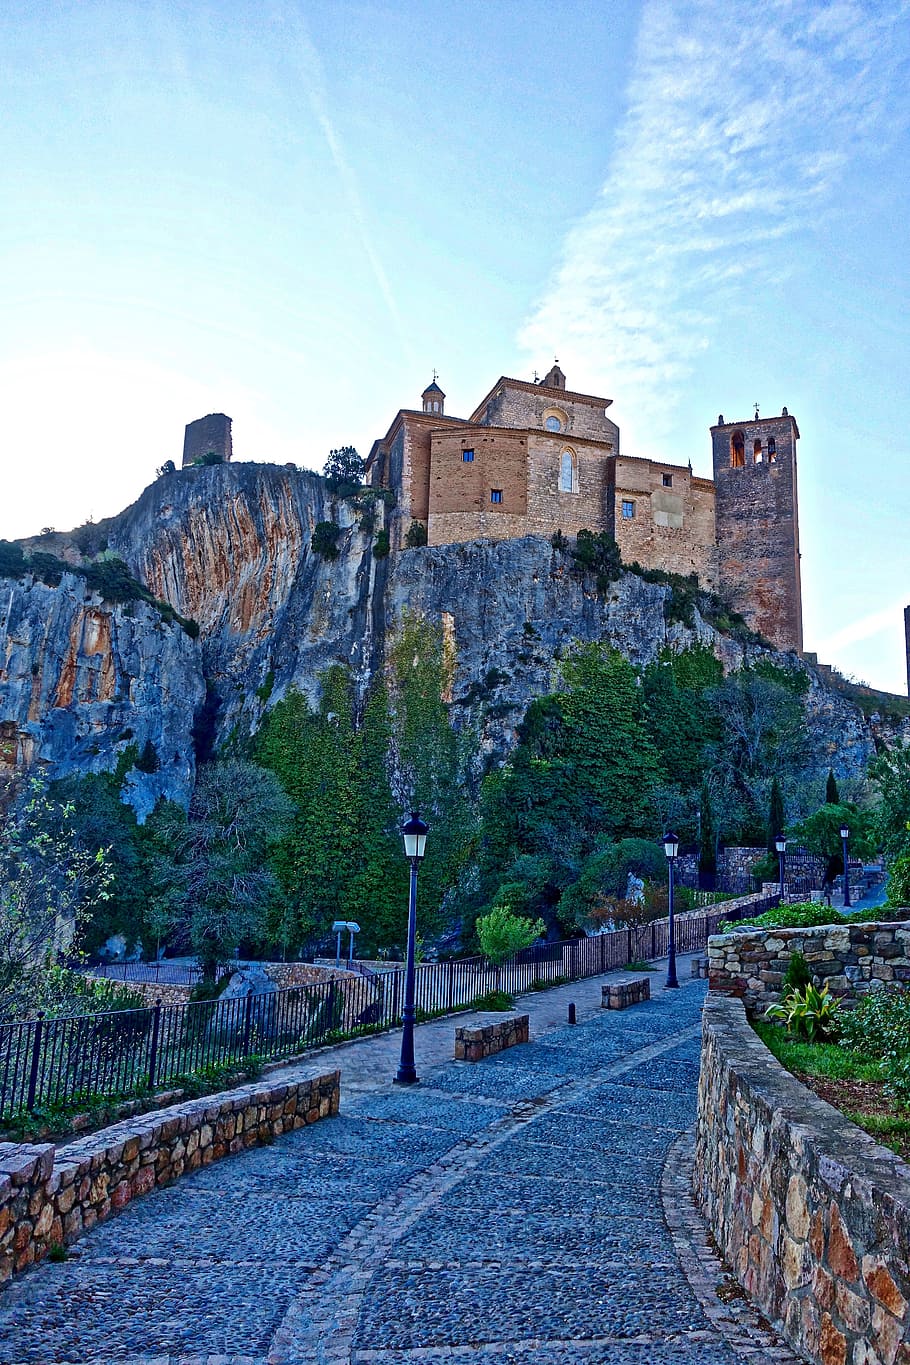 Citadel, Castle, Alquezar, View, historic, buildings, scenic, landscape, landmark, town